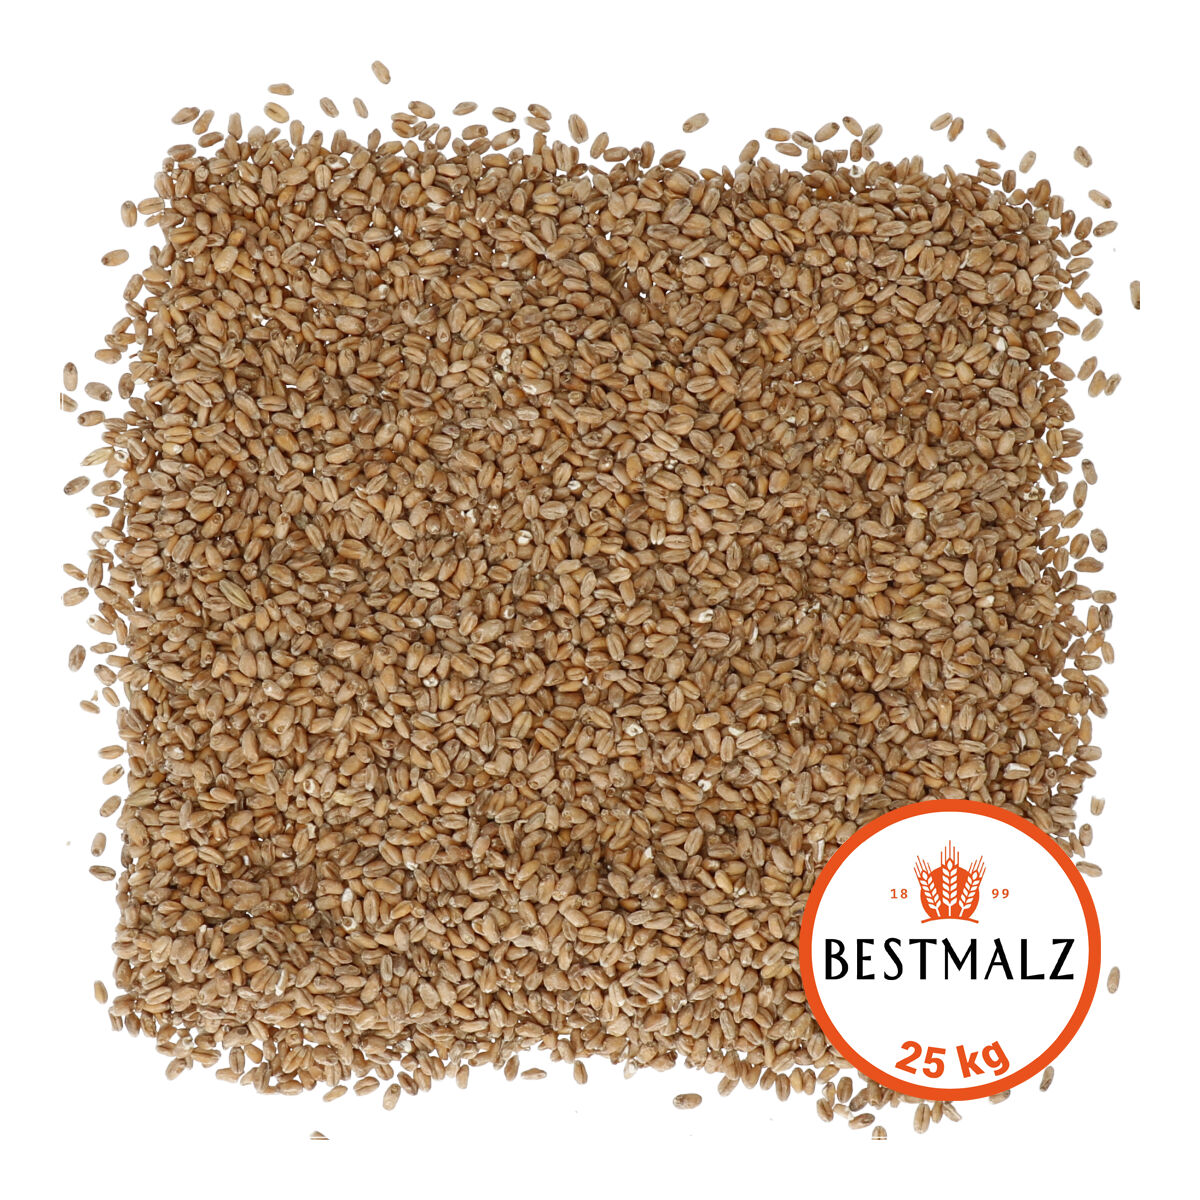 Bestmalz Wheat 25 kg